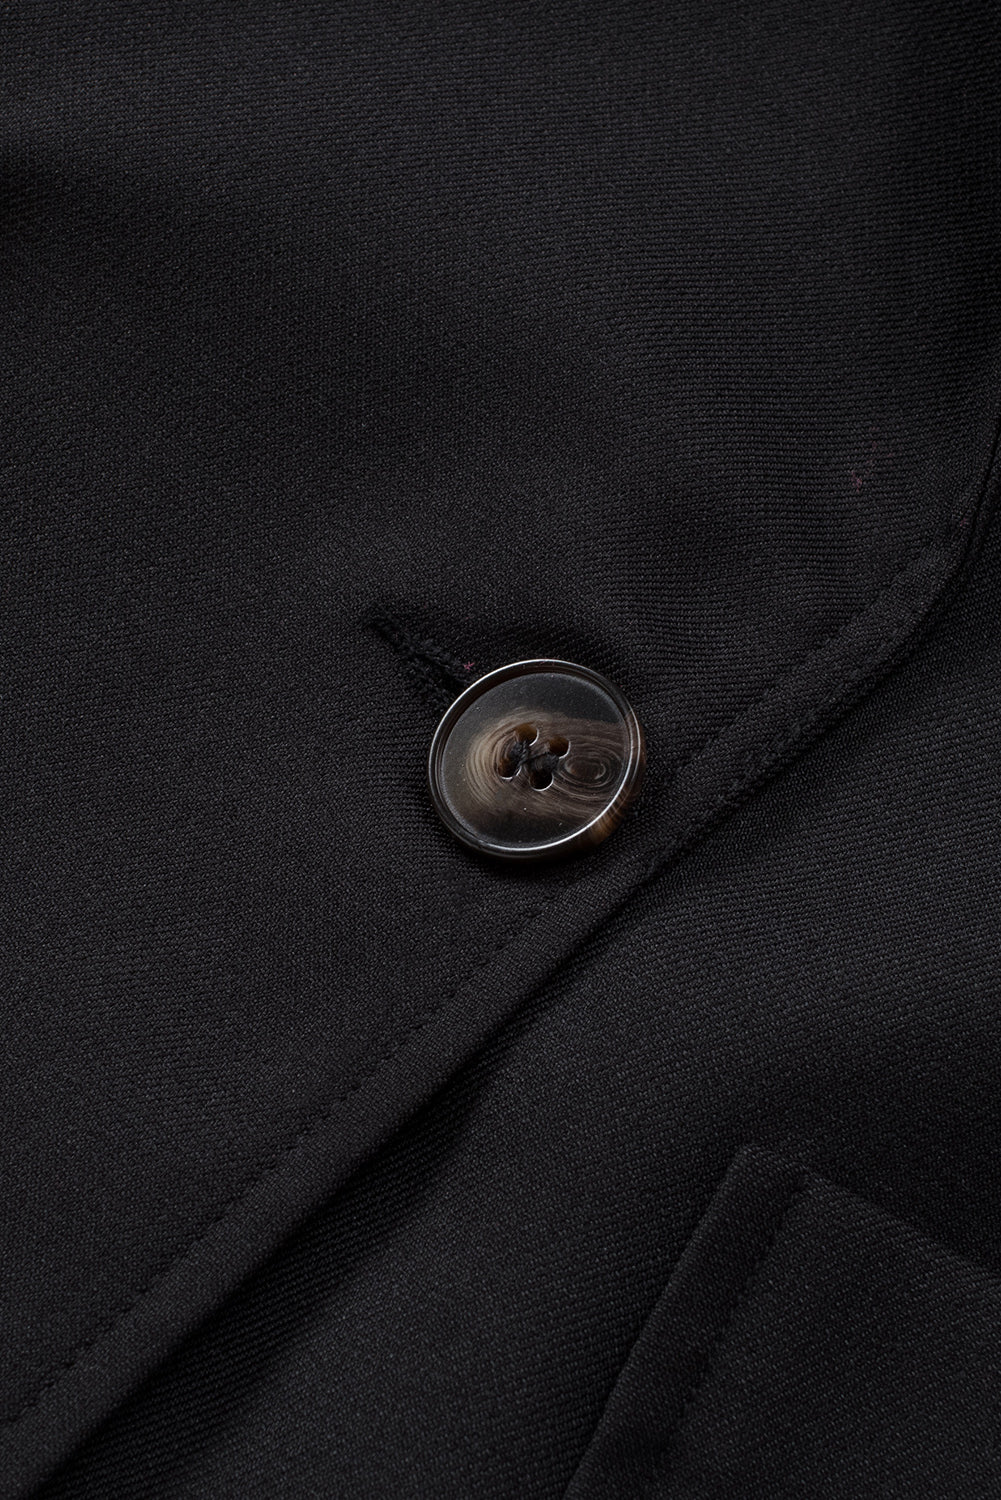 Crni sako s ovratnikom na rever i džepom